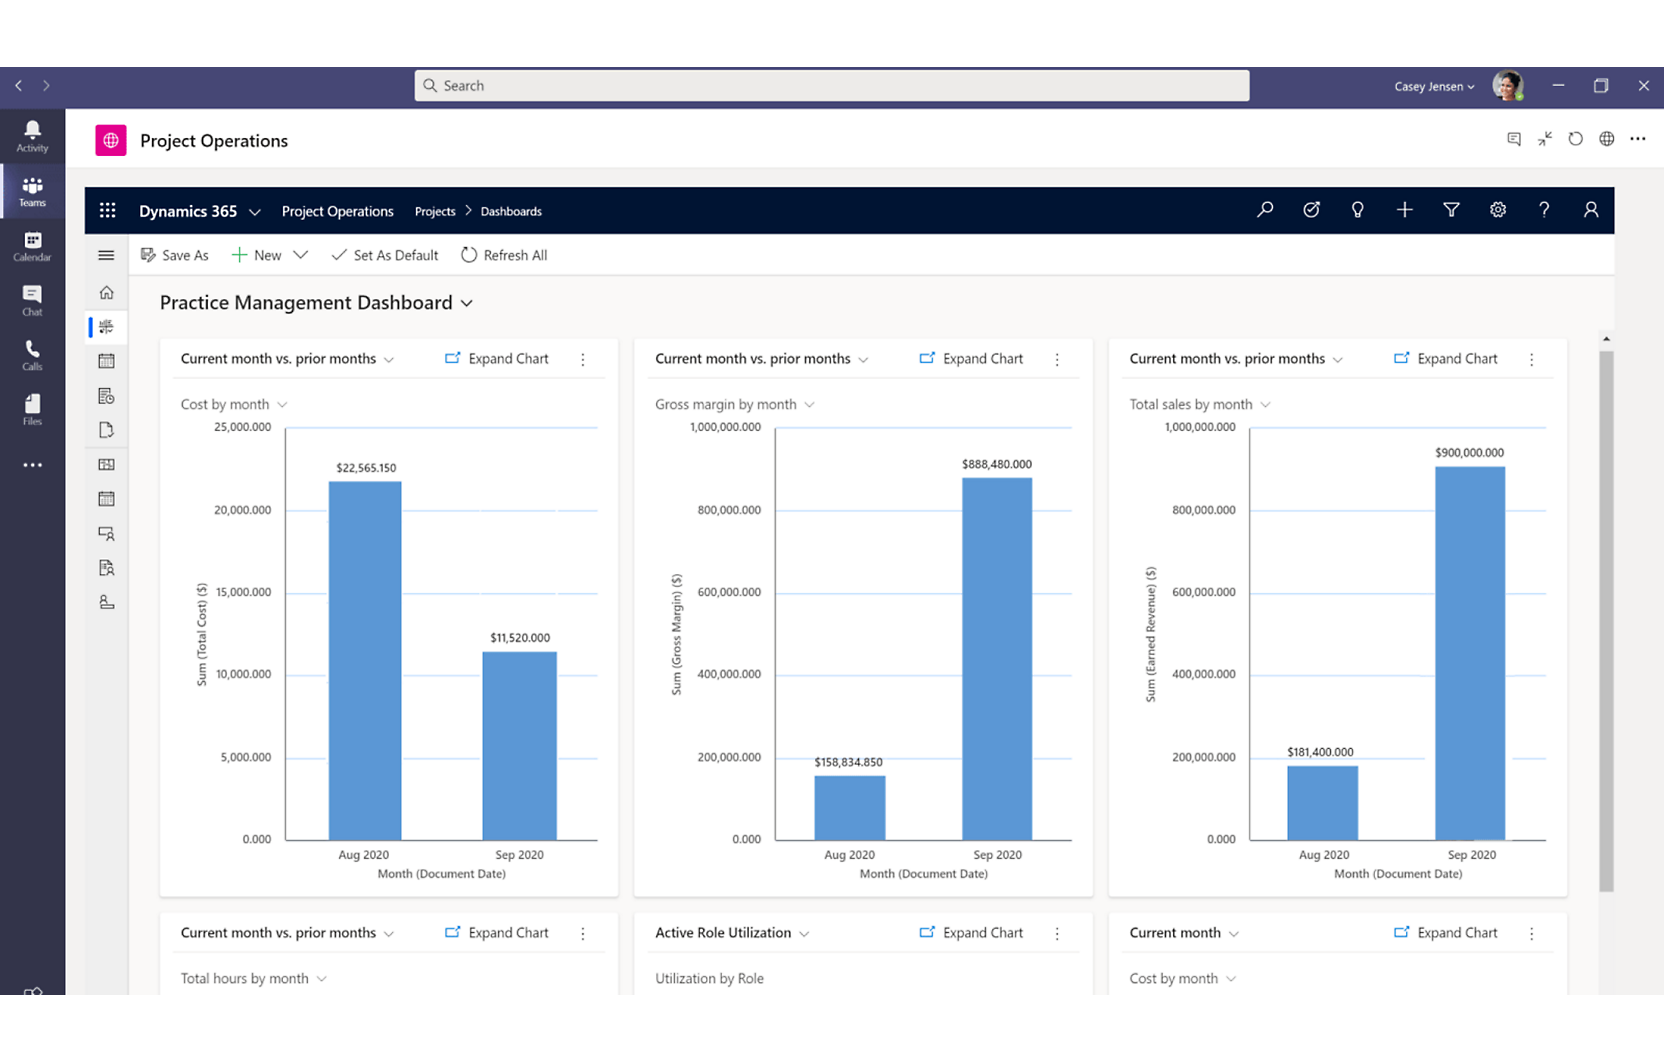 Een schermopname van een dashboard voor projectbeheer met verschillende grafieken met betrekking tot financiële metrische gegevens en resourcegebruik.